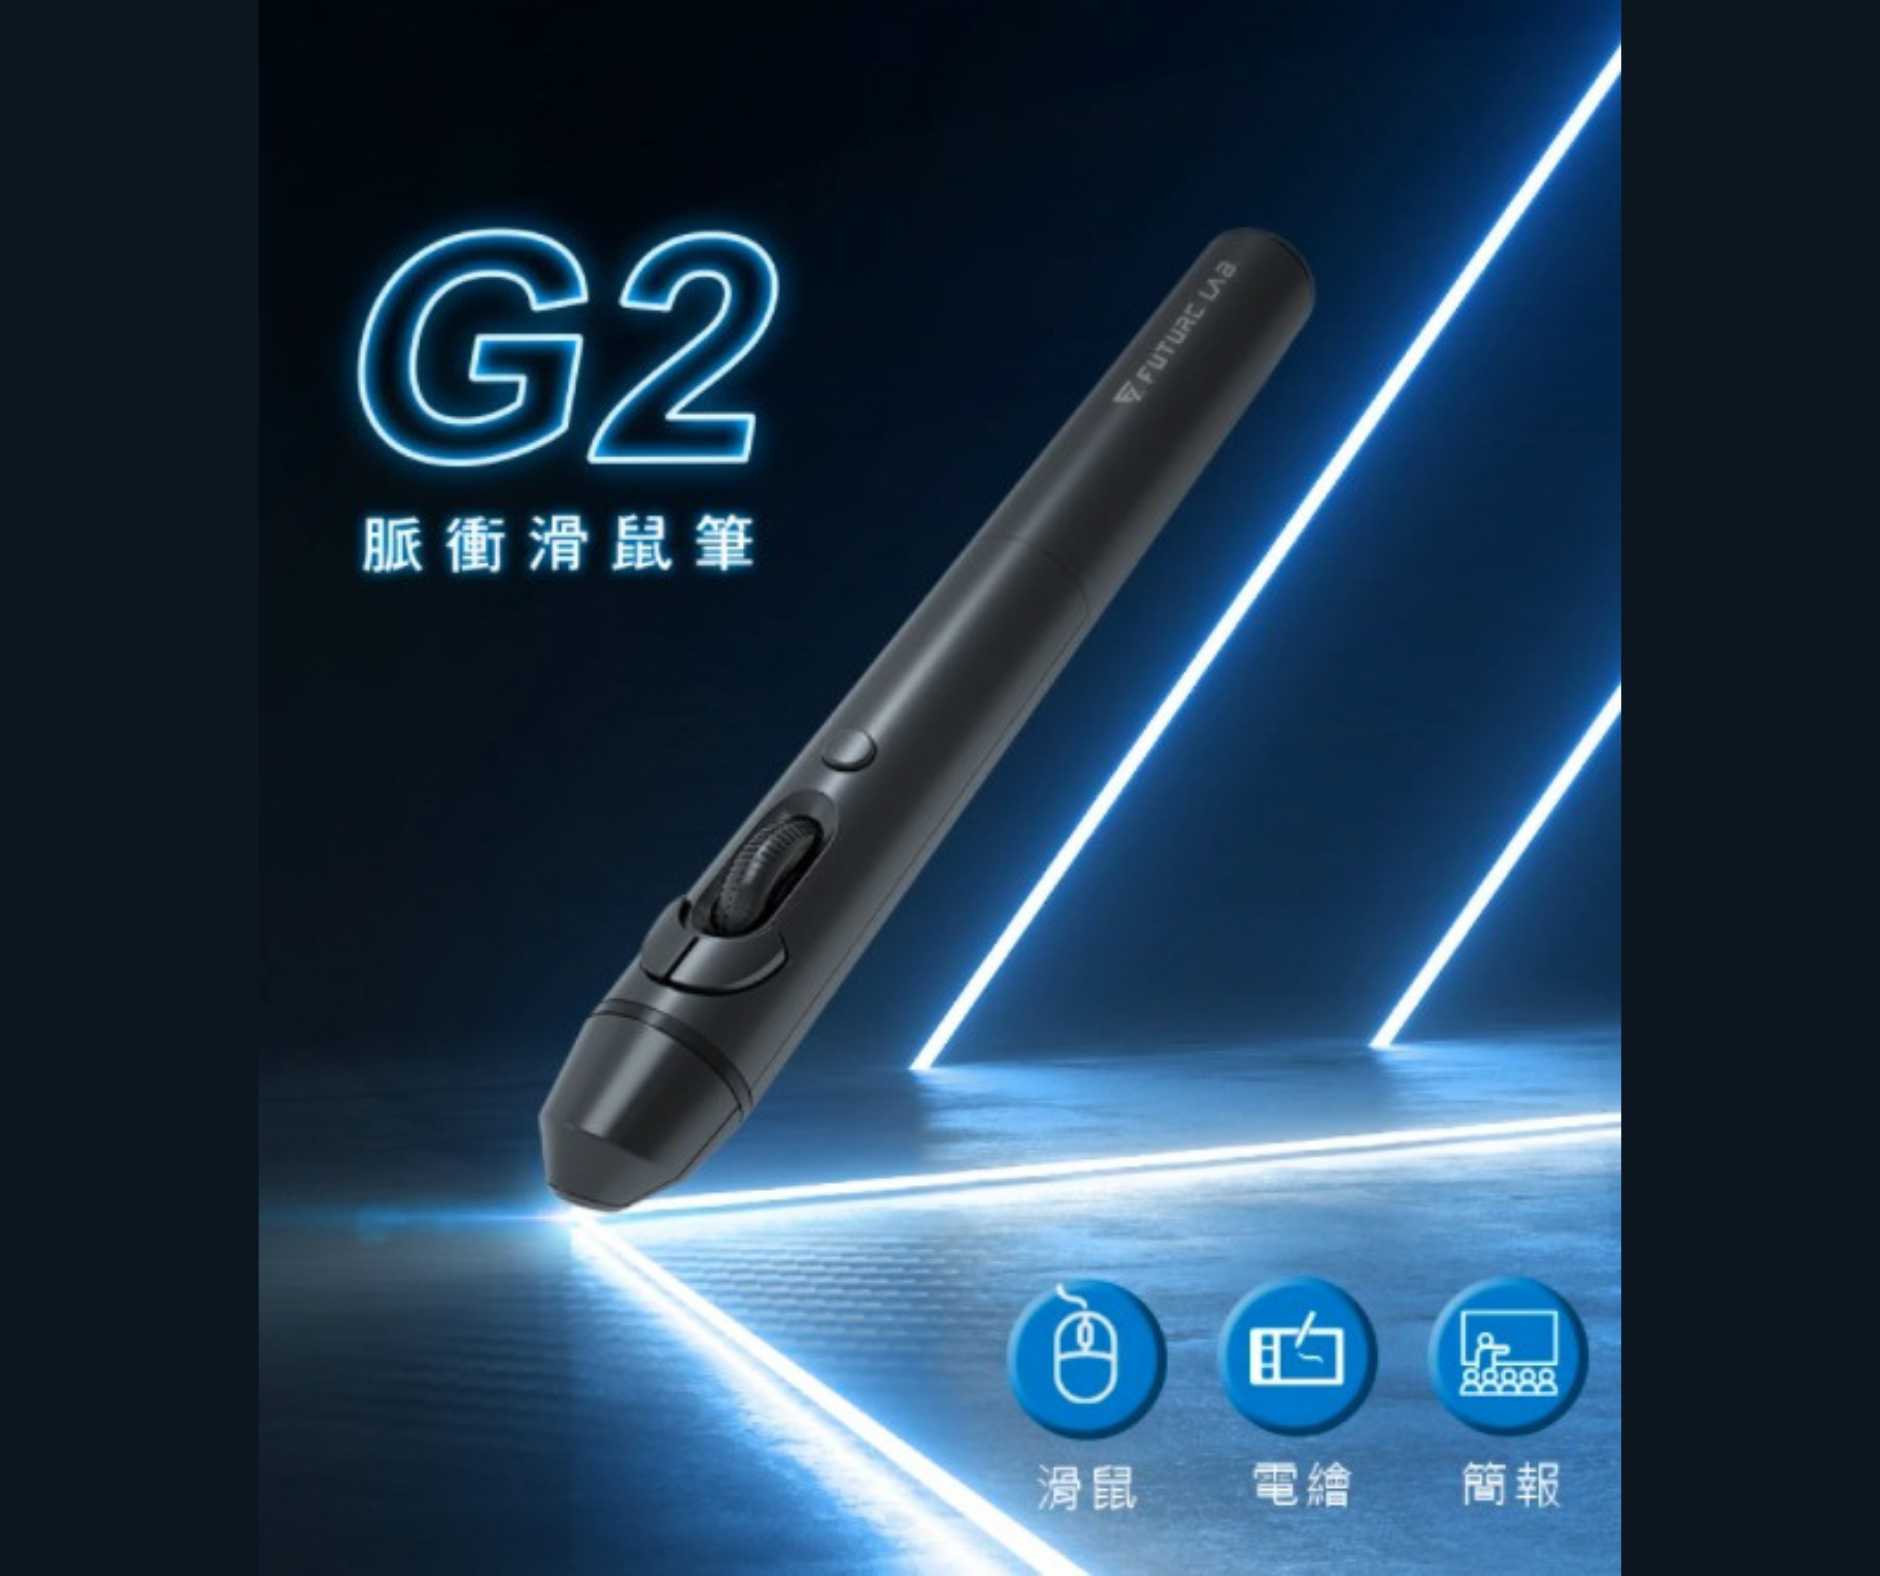 【台灣 Future Lab G2 脈衝滑鼠筆】 滑鼠、電繪、簡報 三大功能於一身